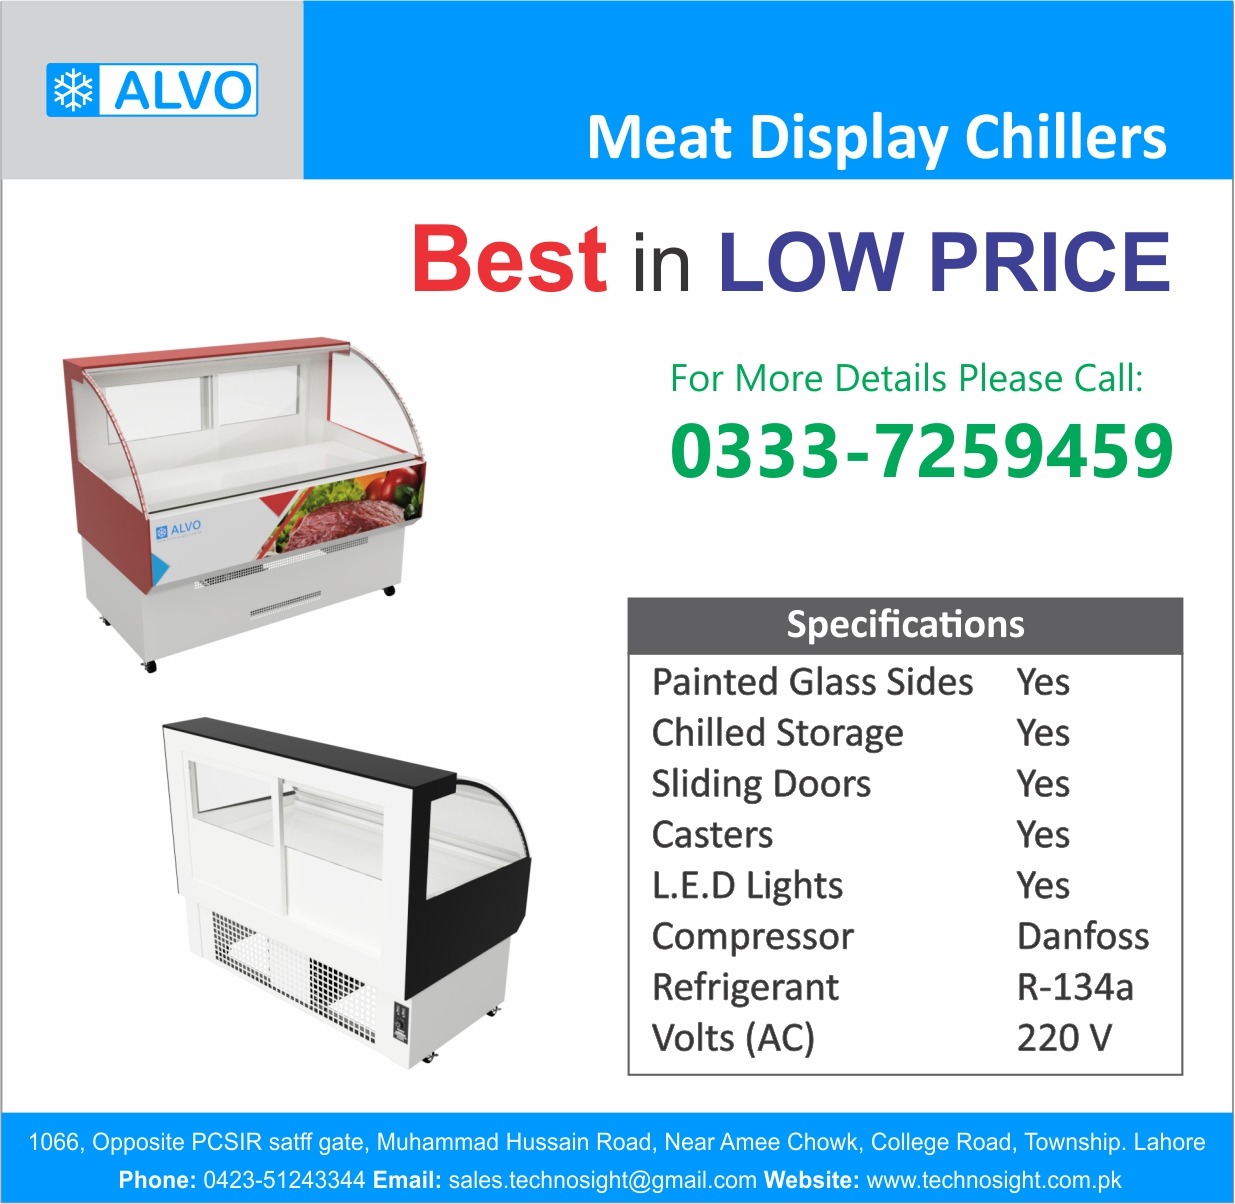 ALVO Meat Shop in Pakistan, Meat Display Chiller, Meat Hanging Chiller, Carcass Hanging Chiller, Equipment for Meat Shop in Pakistan